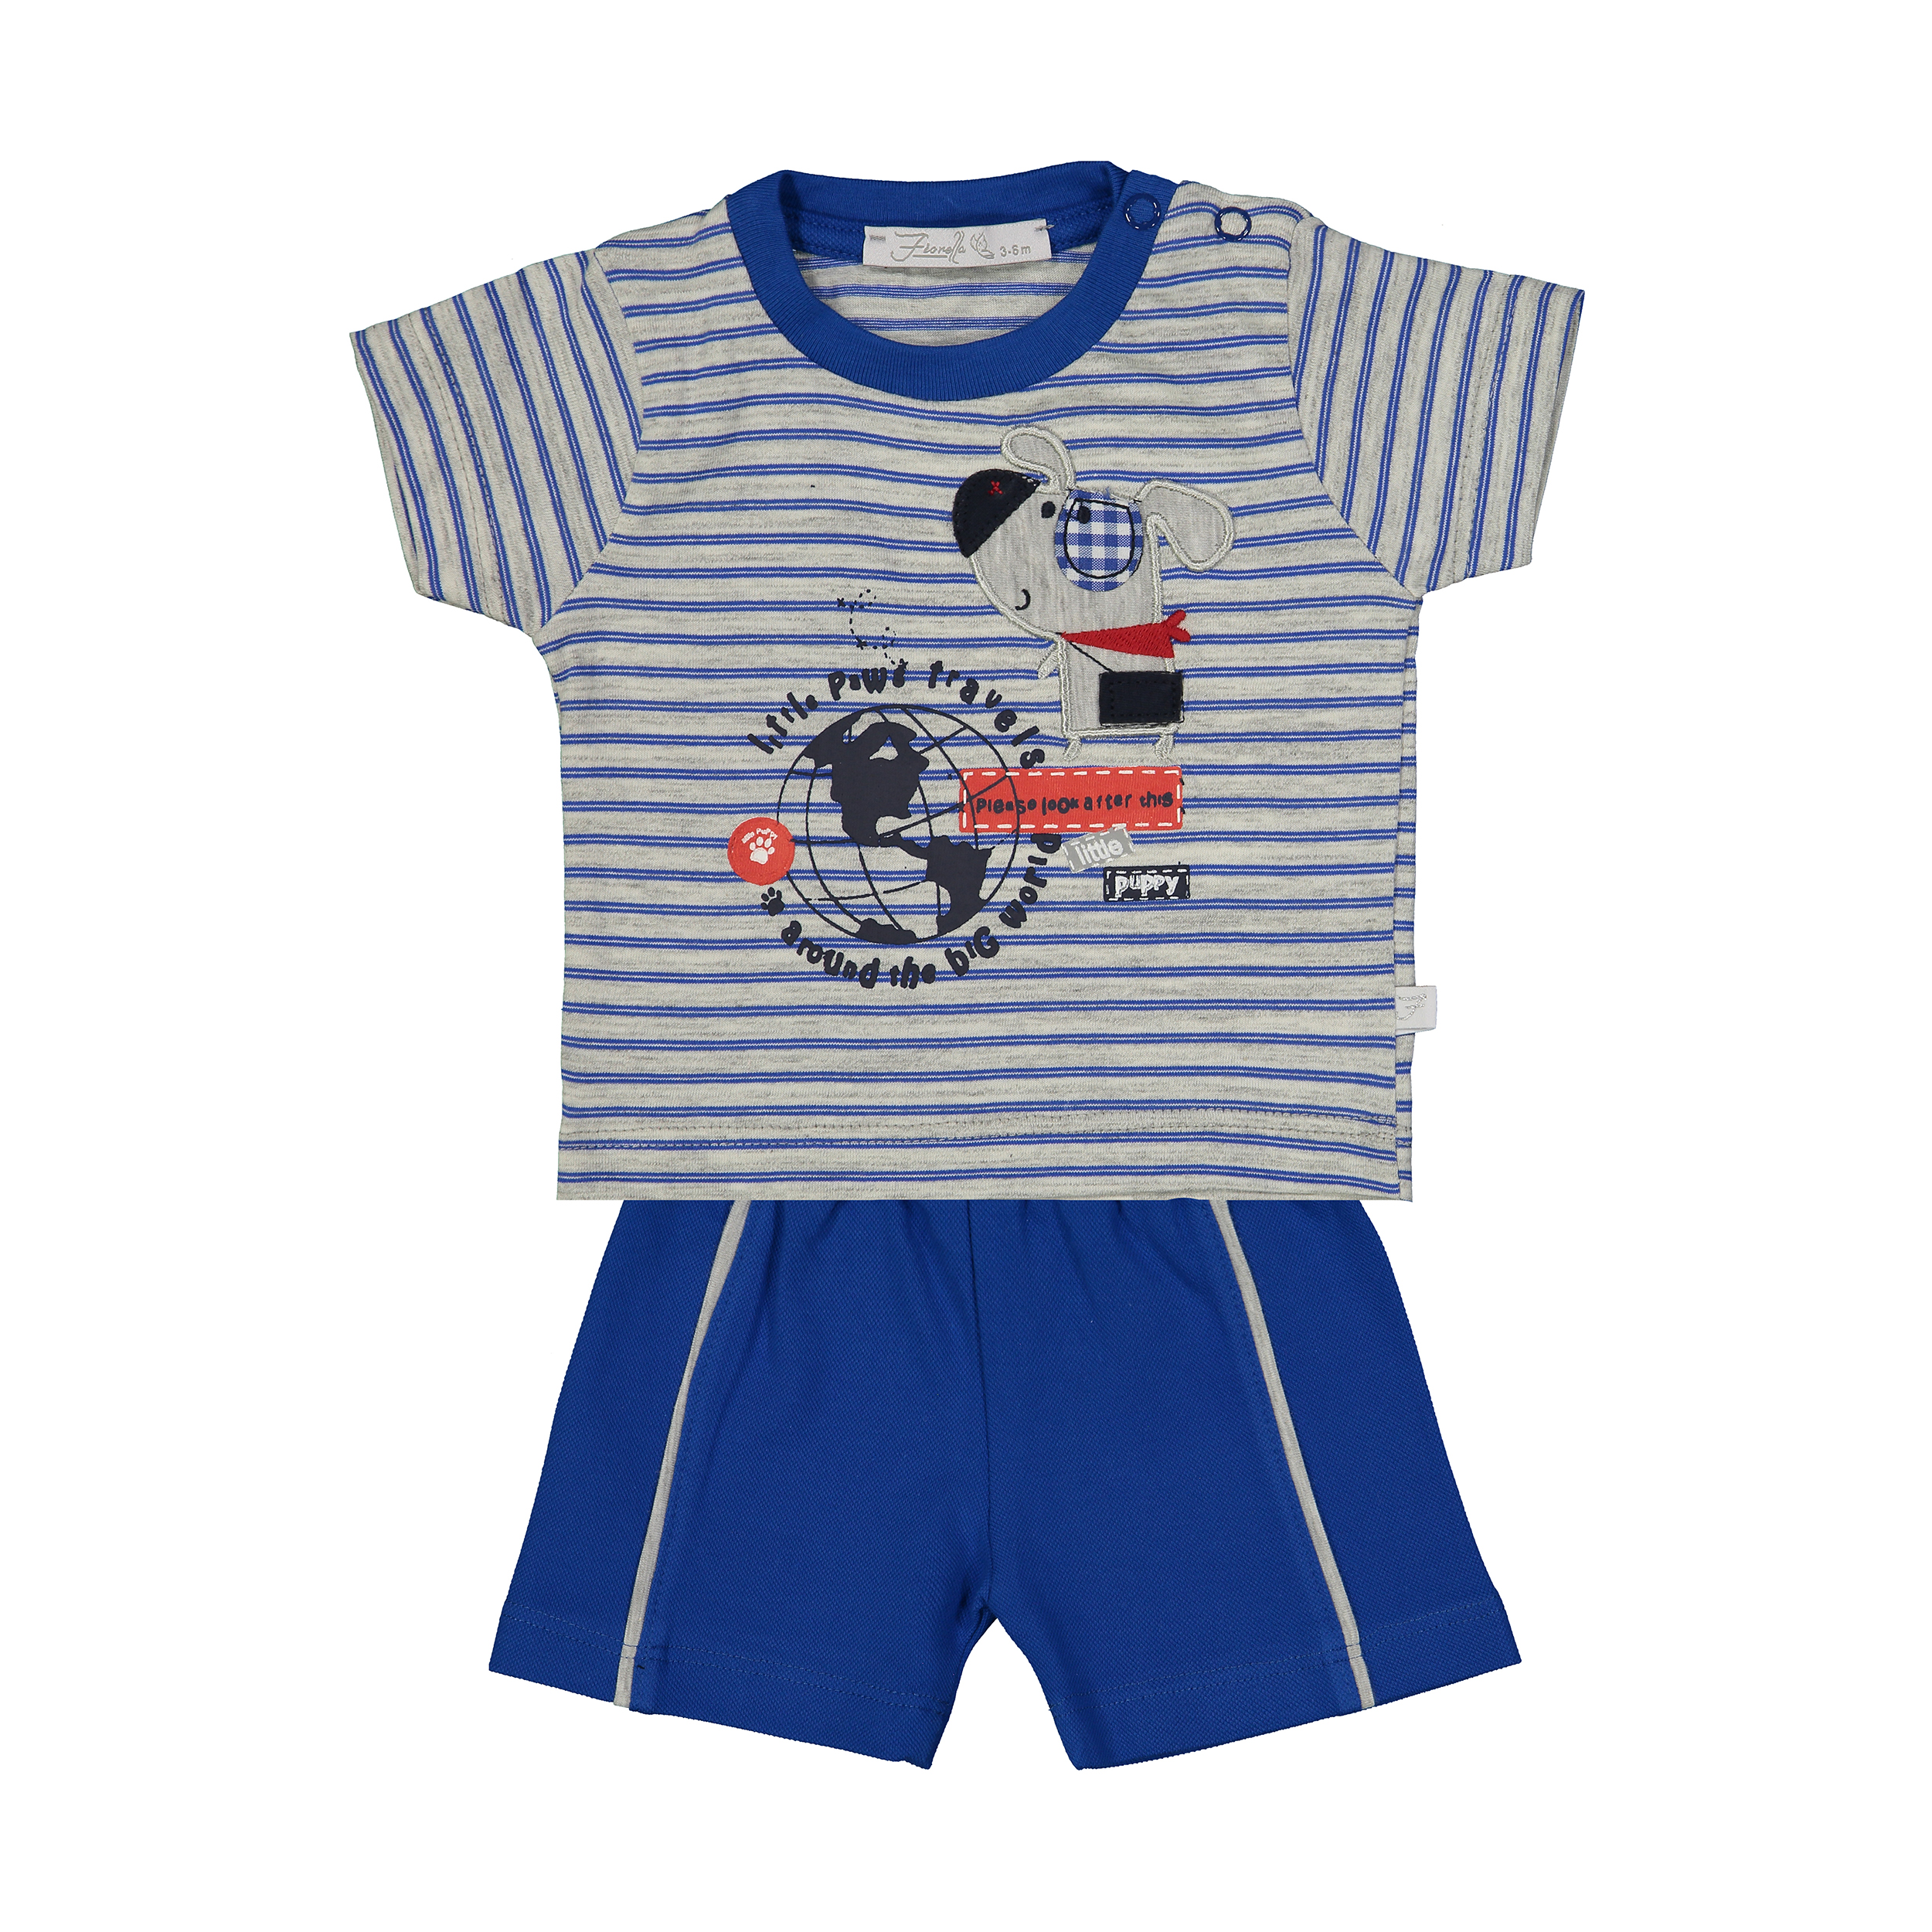 ست تی شرت و شلوارک راحتی نوزادی پسرانه فیورلا مدل 2091115-58 -  - 1